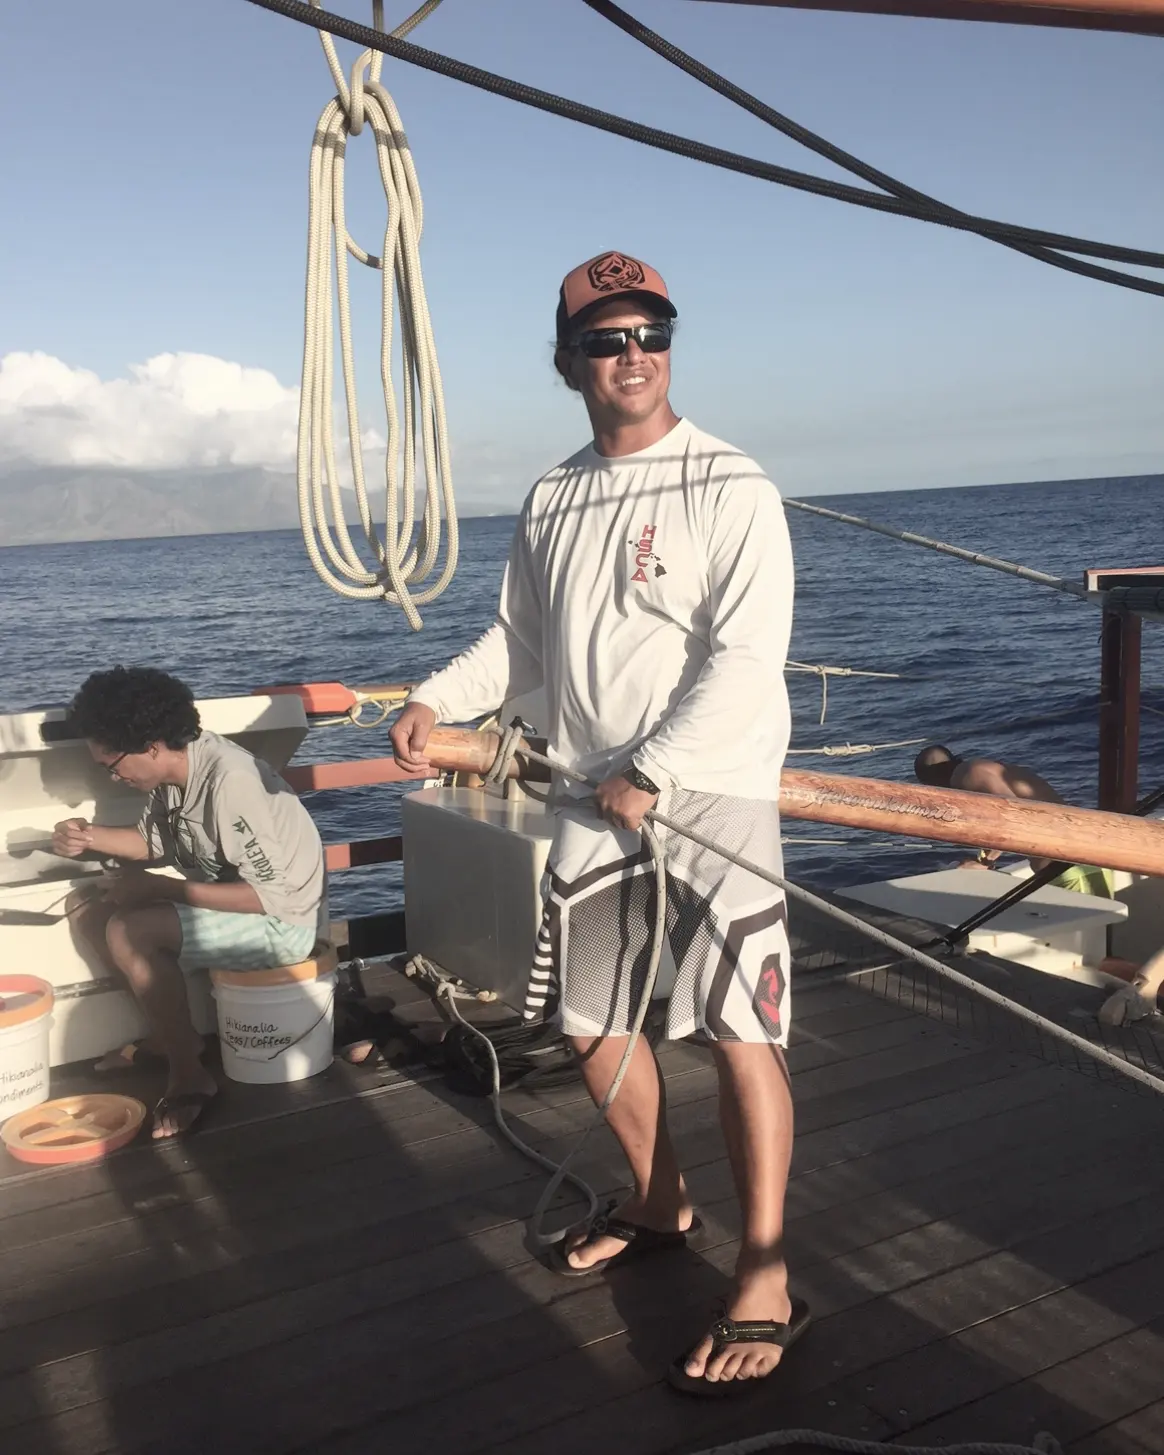 Ekolu Lindsey Voyage to Nihoa board the Hikianalia sailing vessel